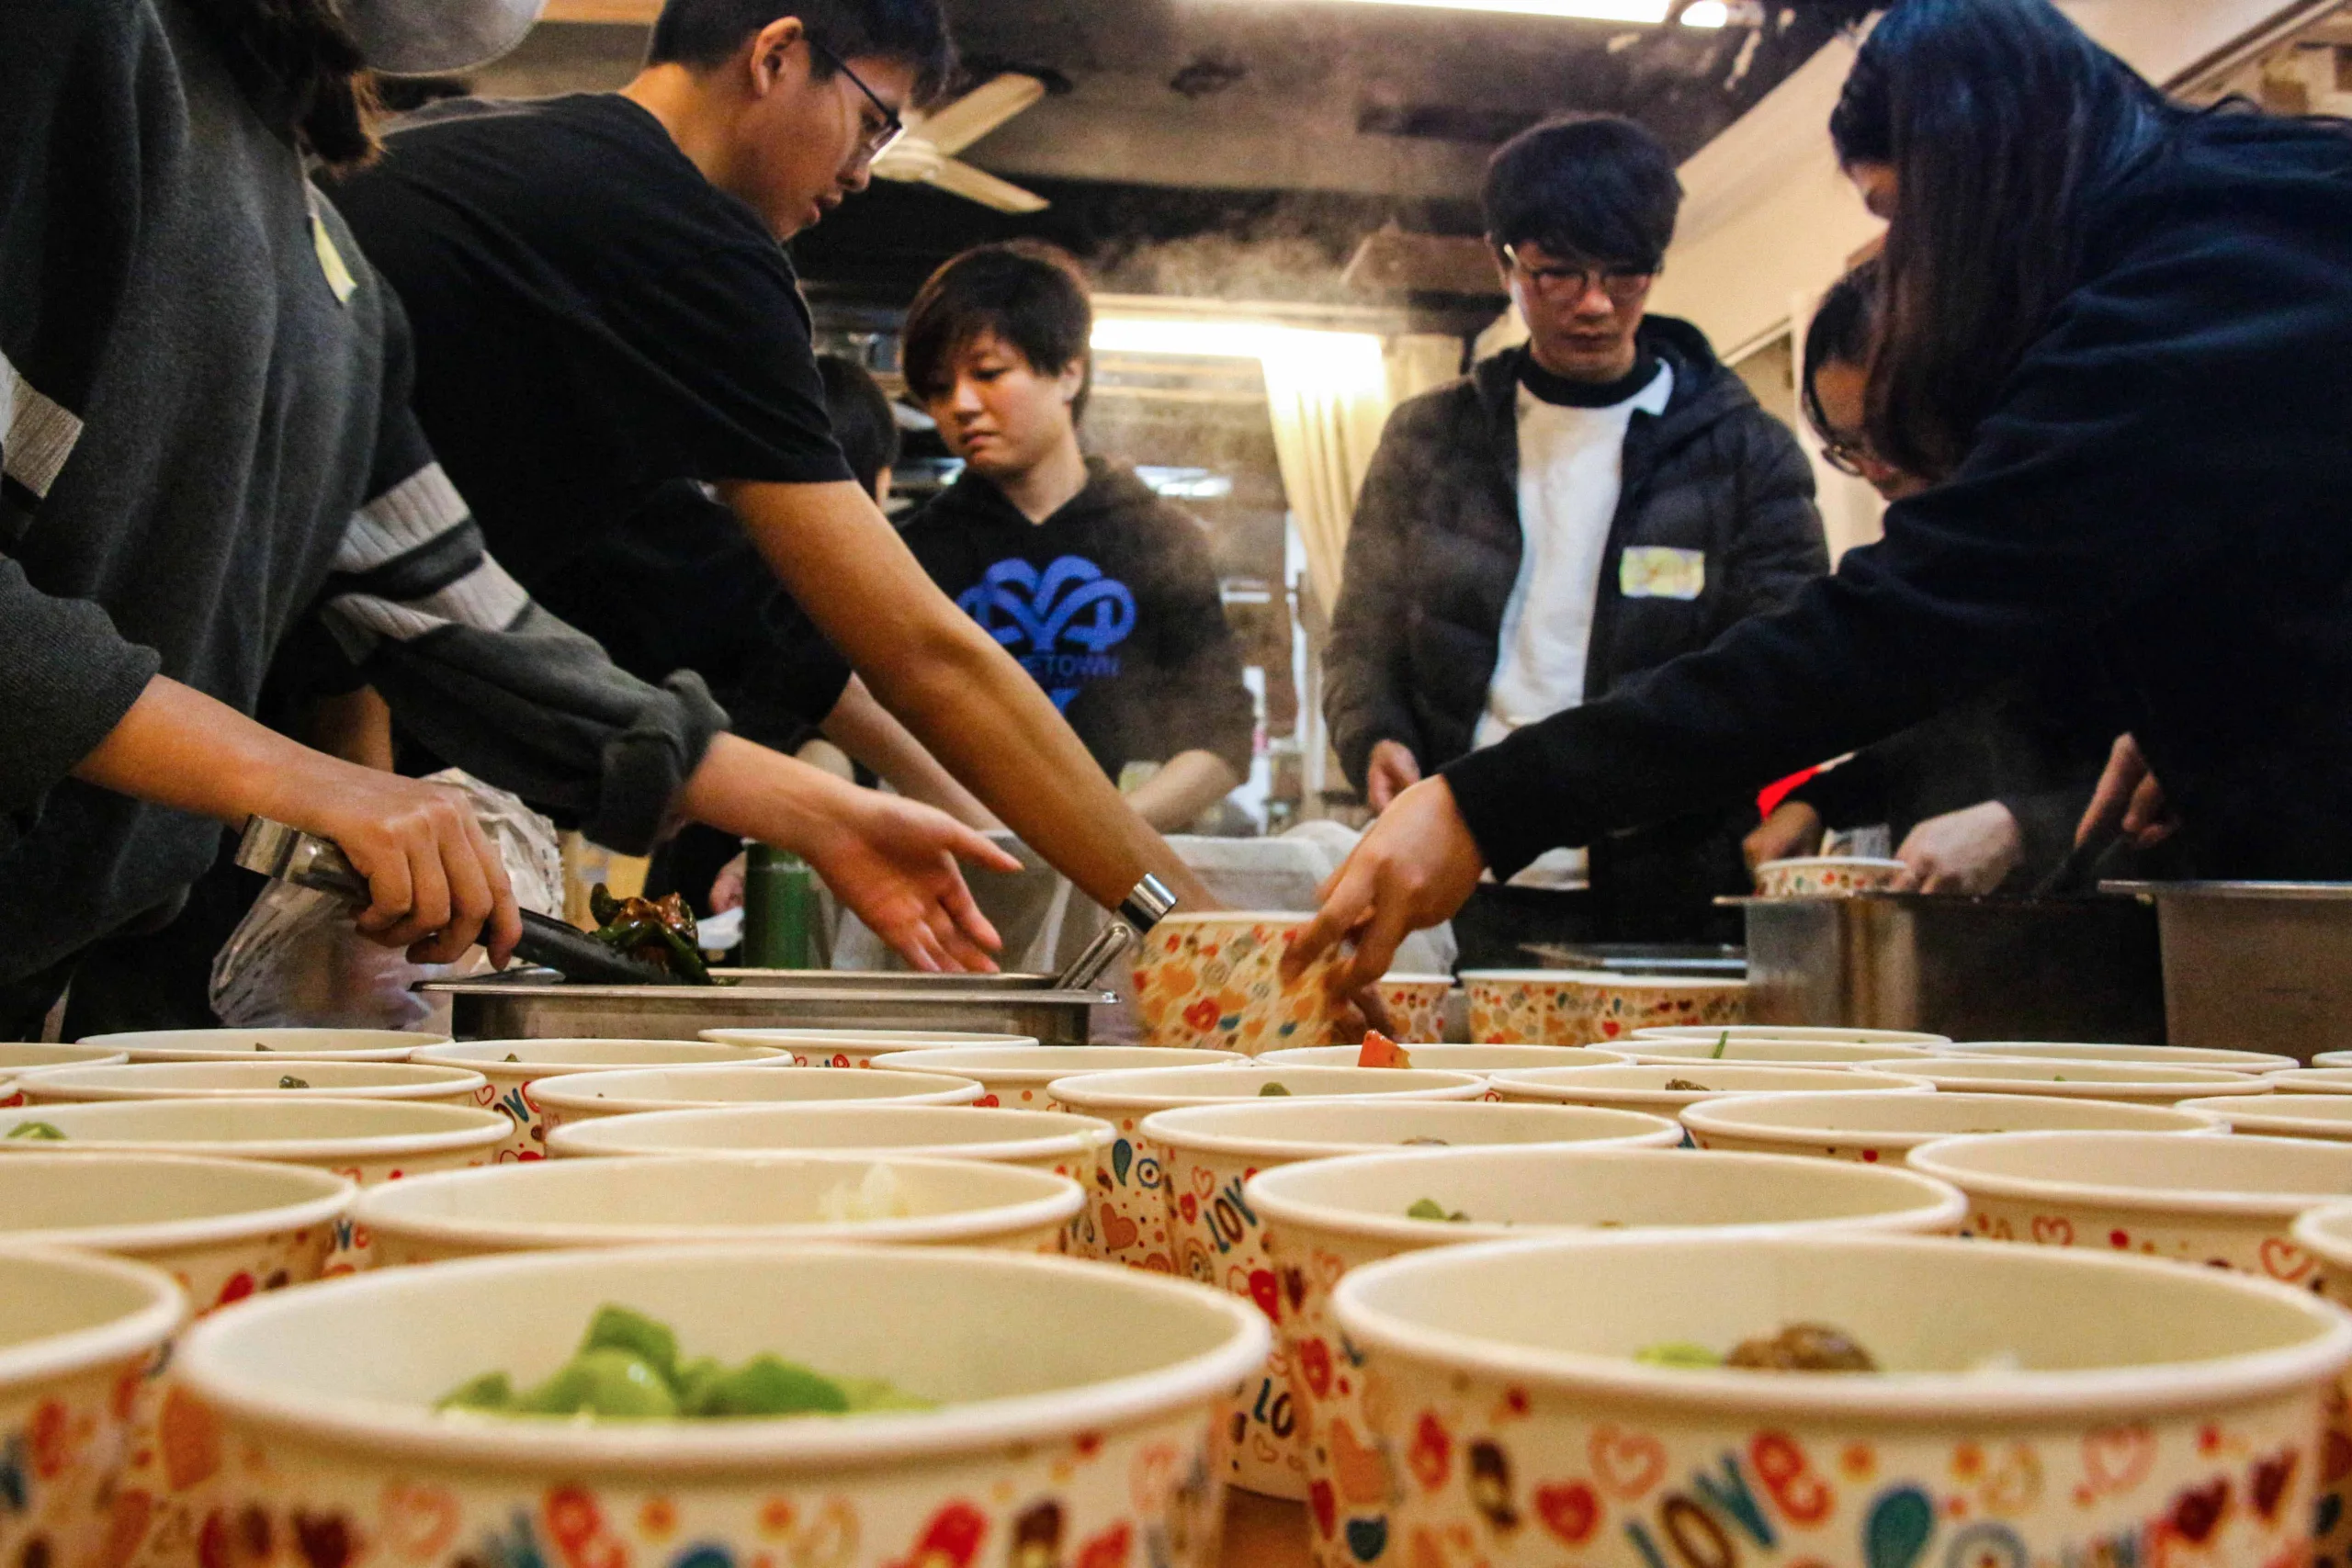 【攝影報導】作伙來煮石頭湯 加入善待貧窮的社運